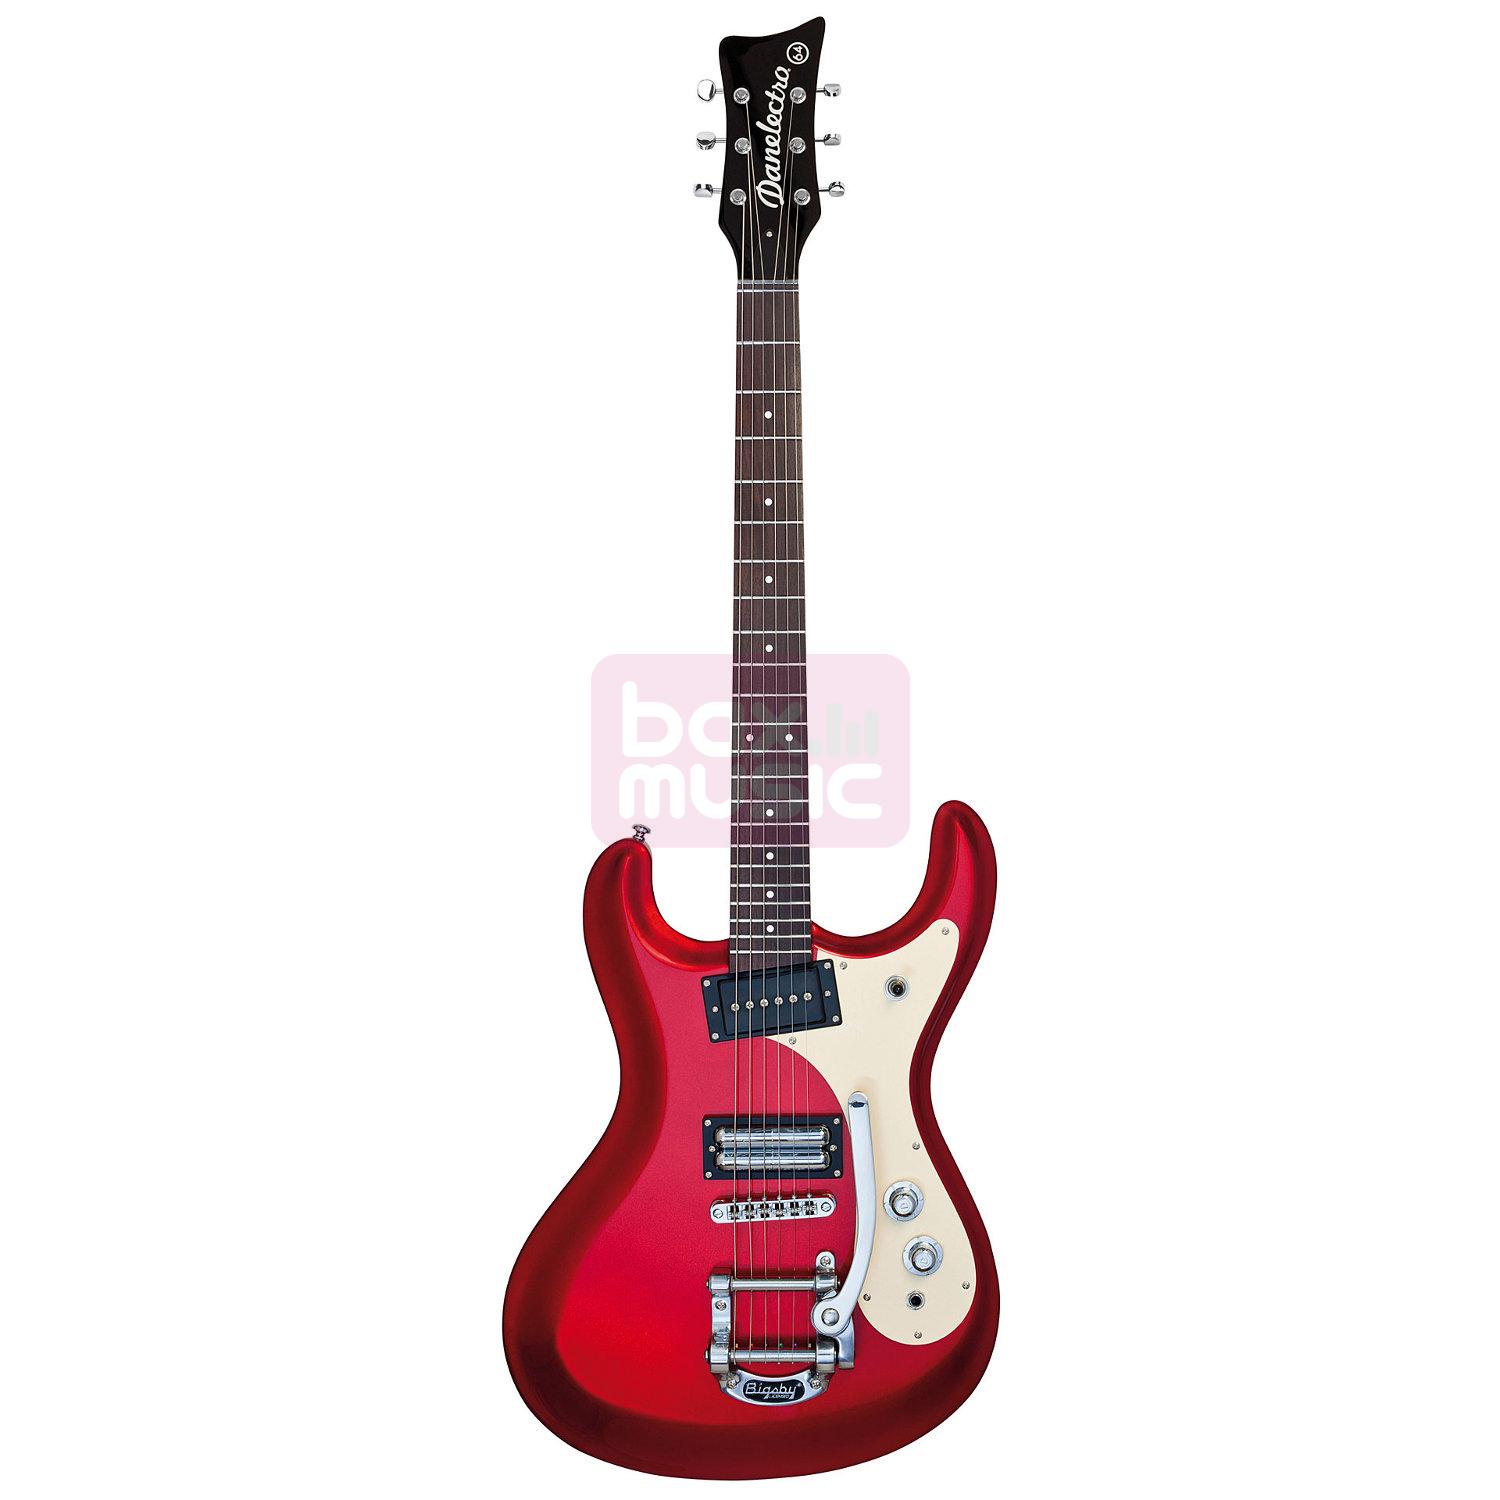 Danelectro 64 Metallic Red elektrische gitaar